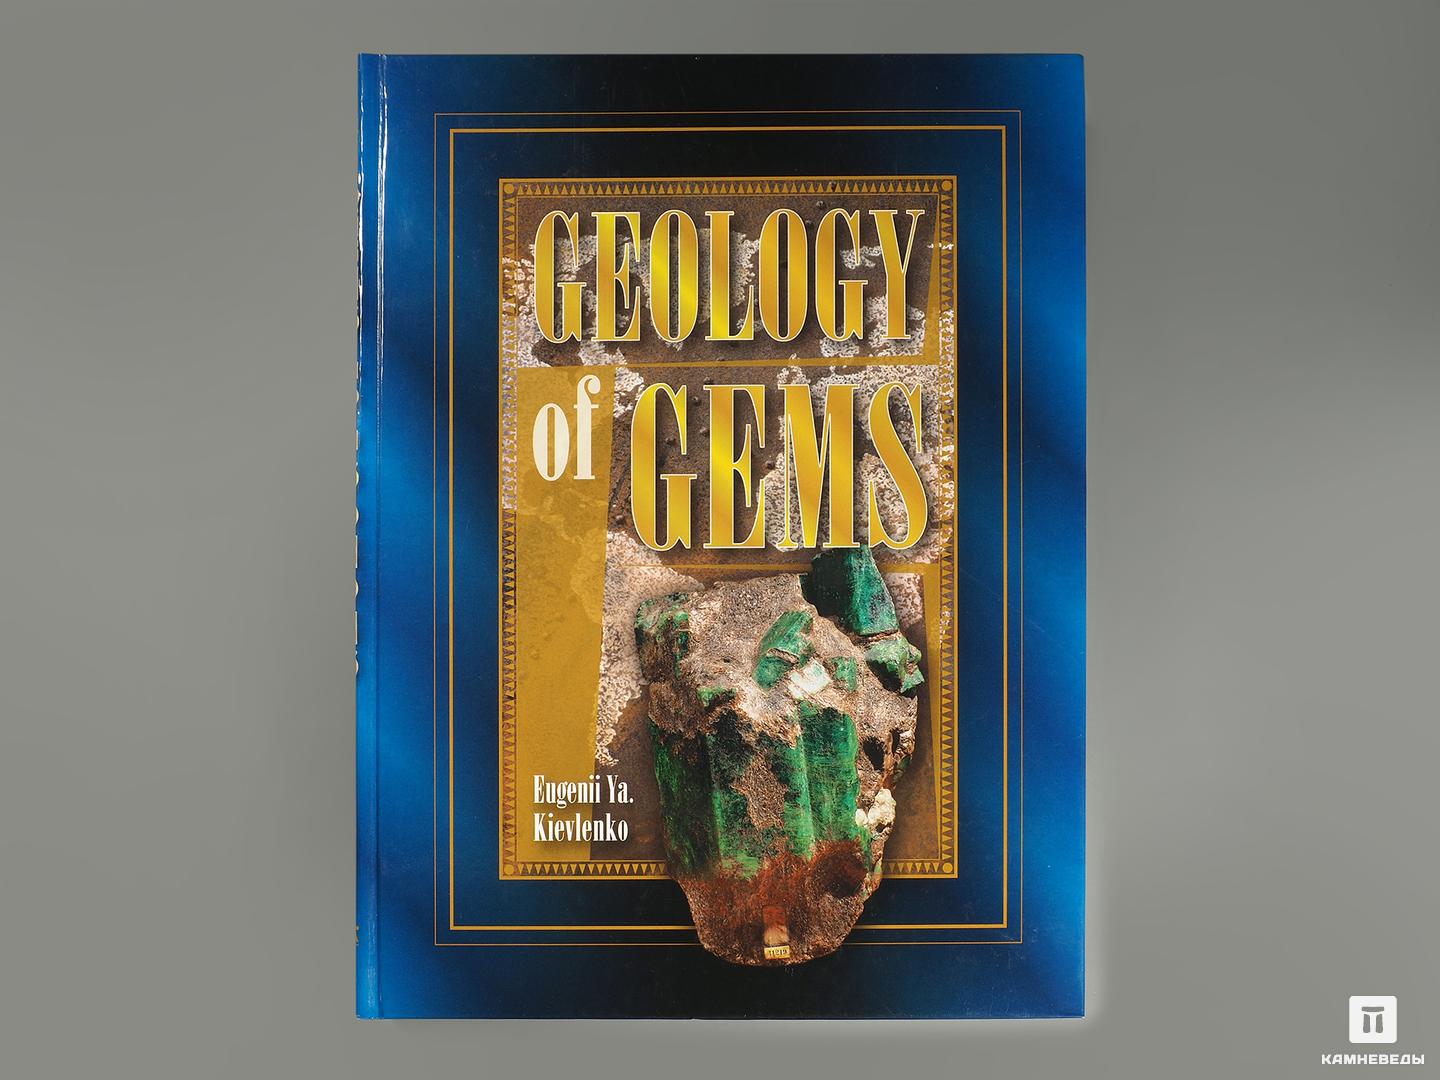 Книга: Eugenii Ya. Kievlenko «Geology of gems» вечер в византии evening in byzantium книга для чтения на английском языке